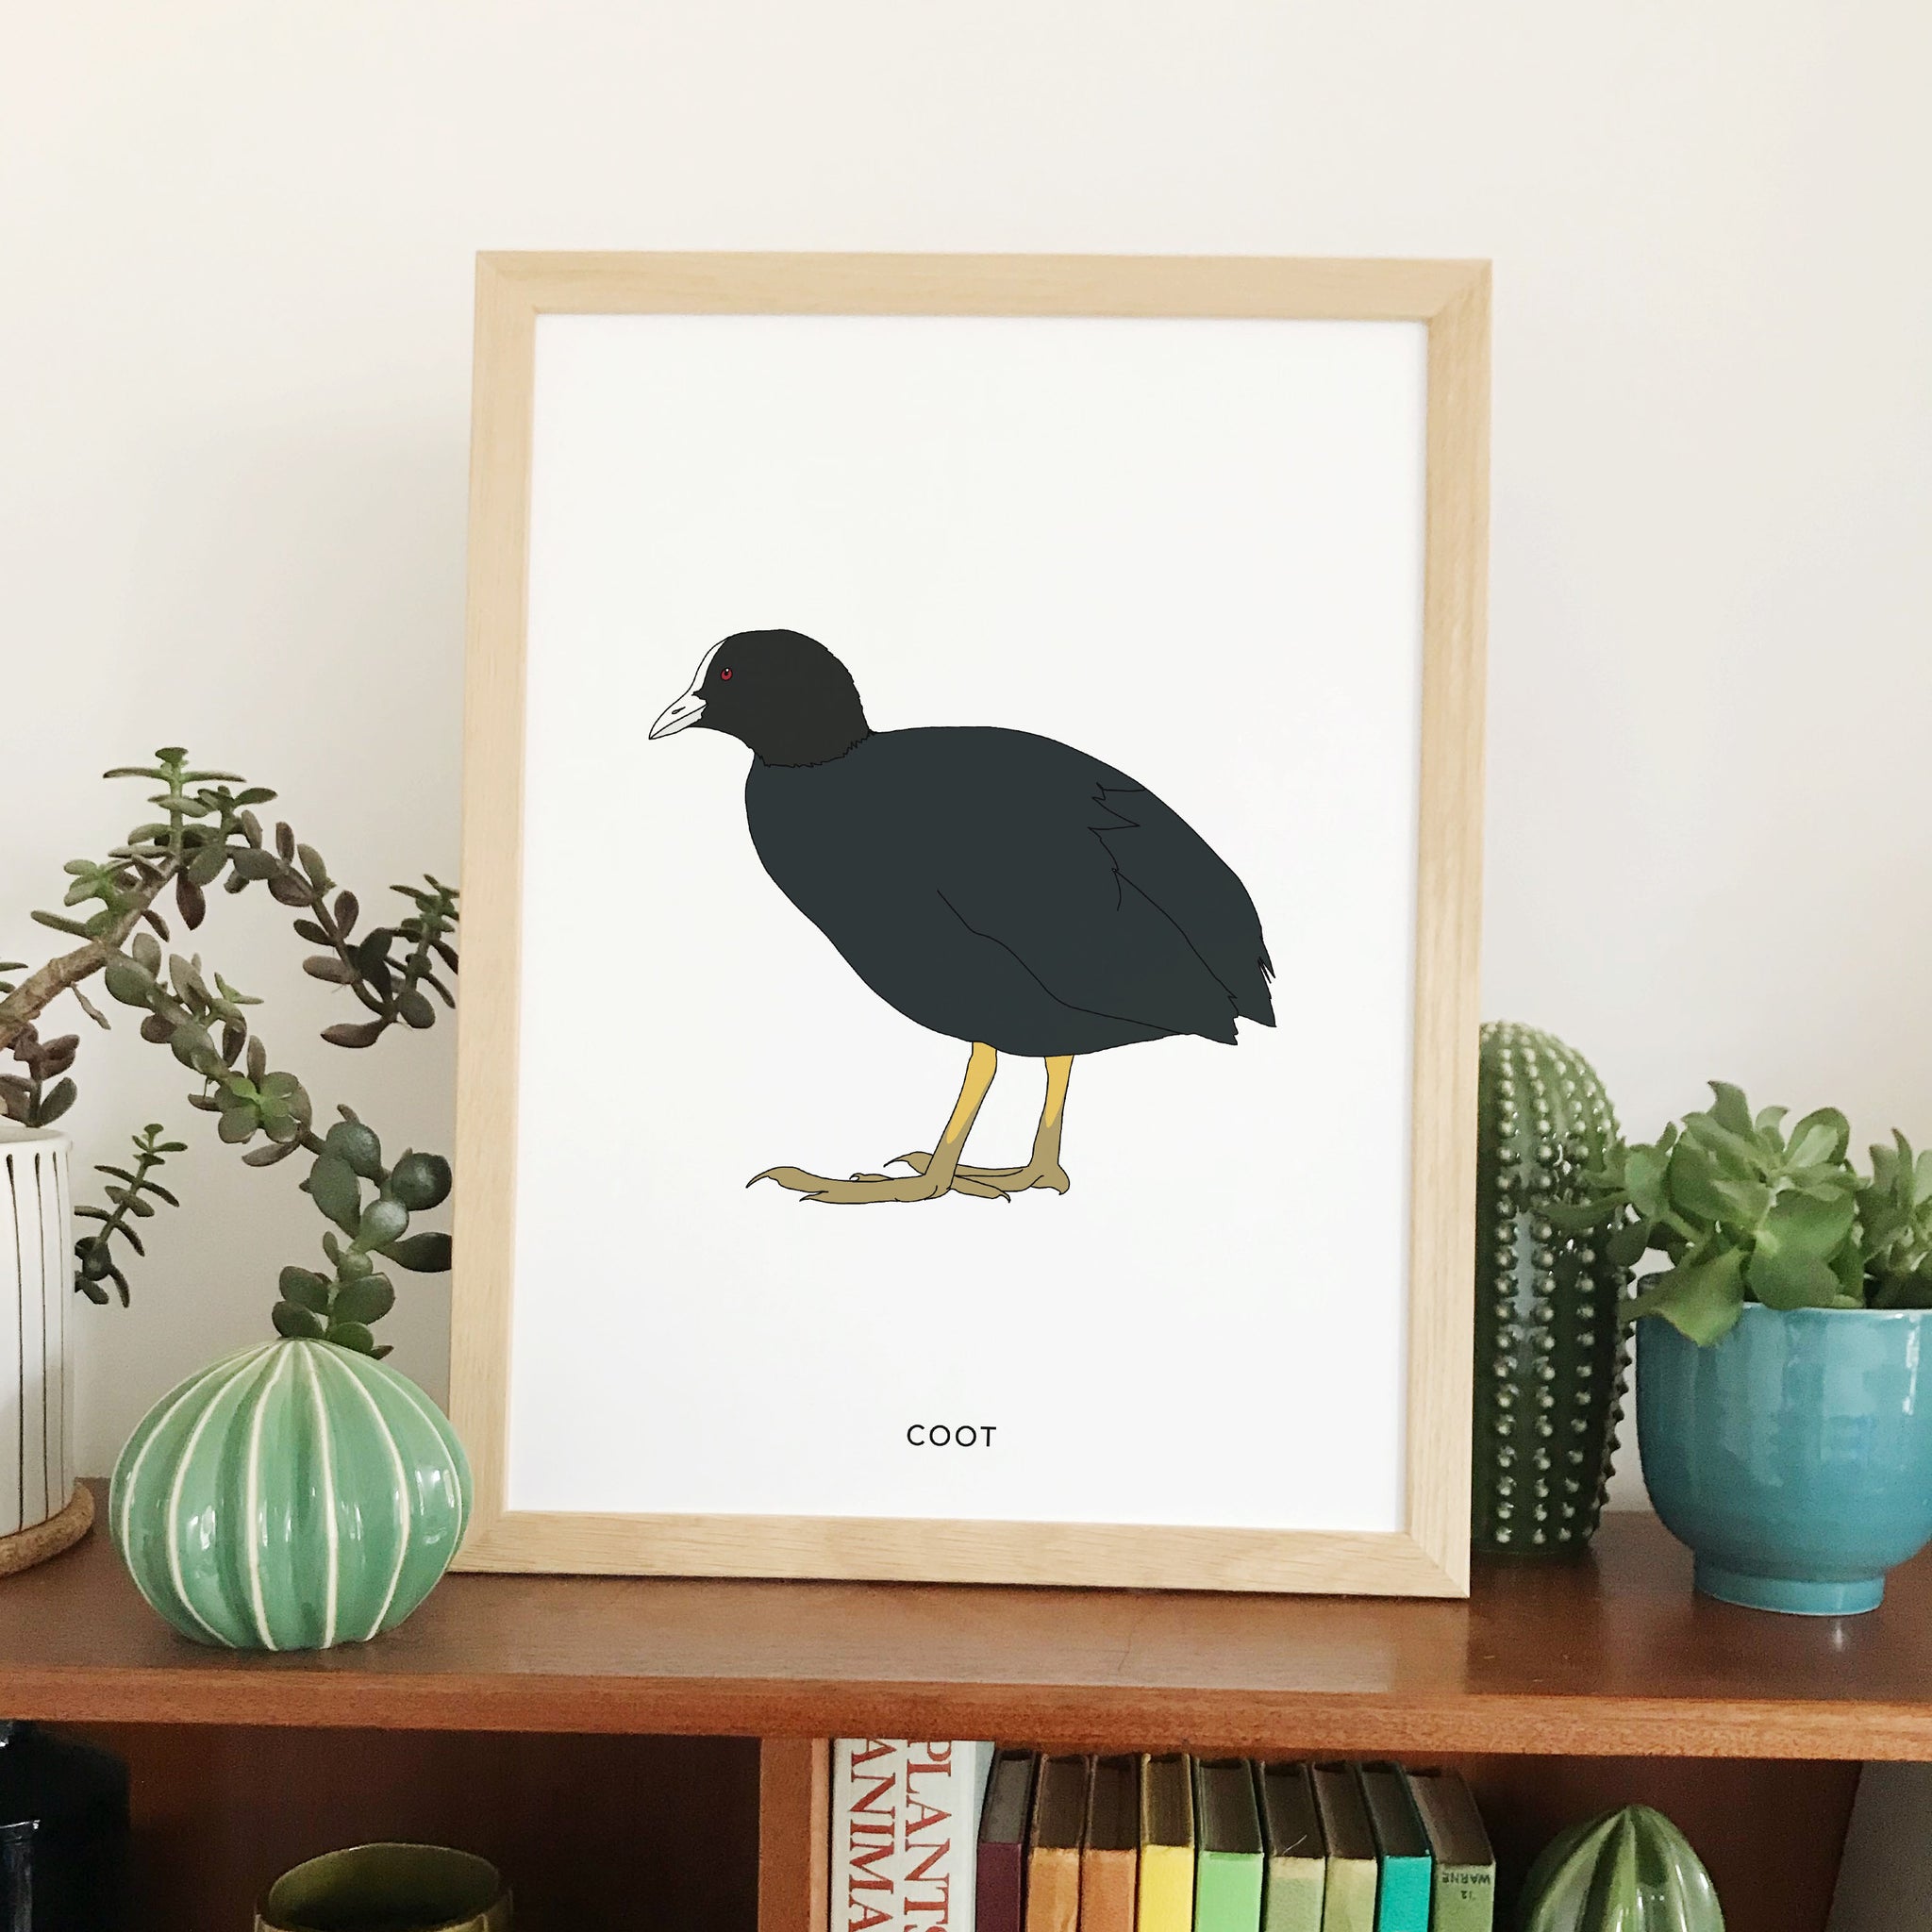 Coot bird print